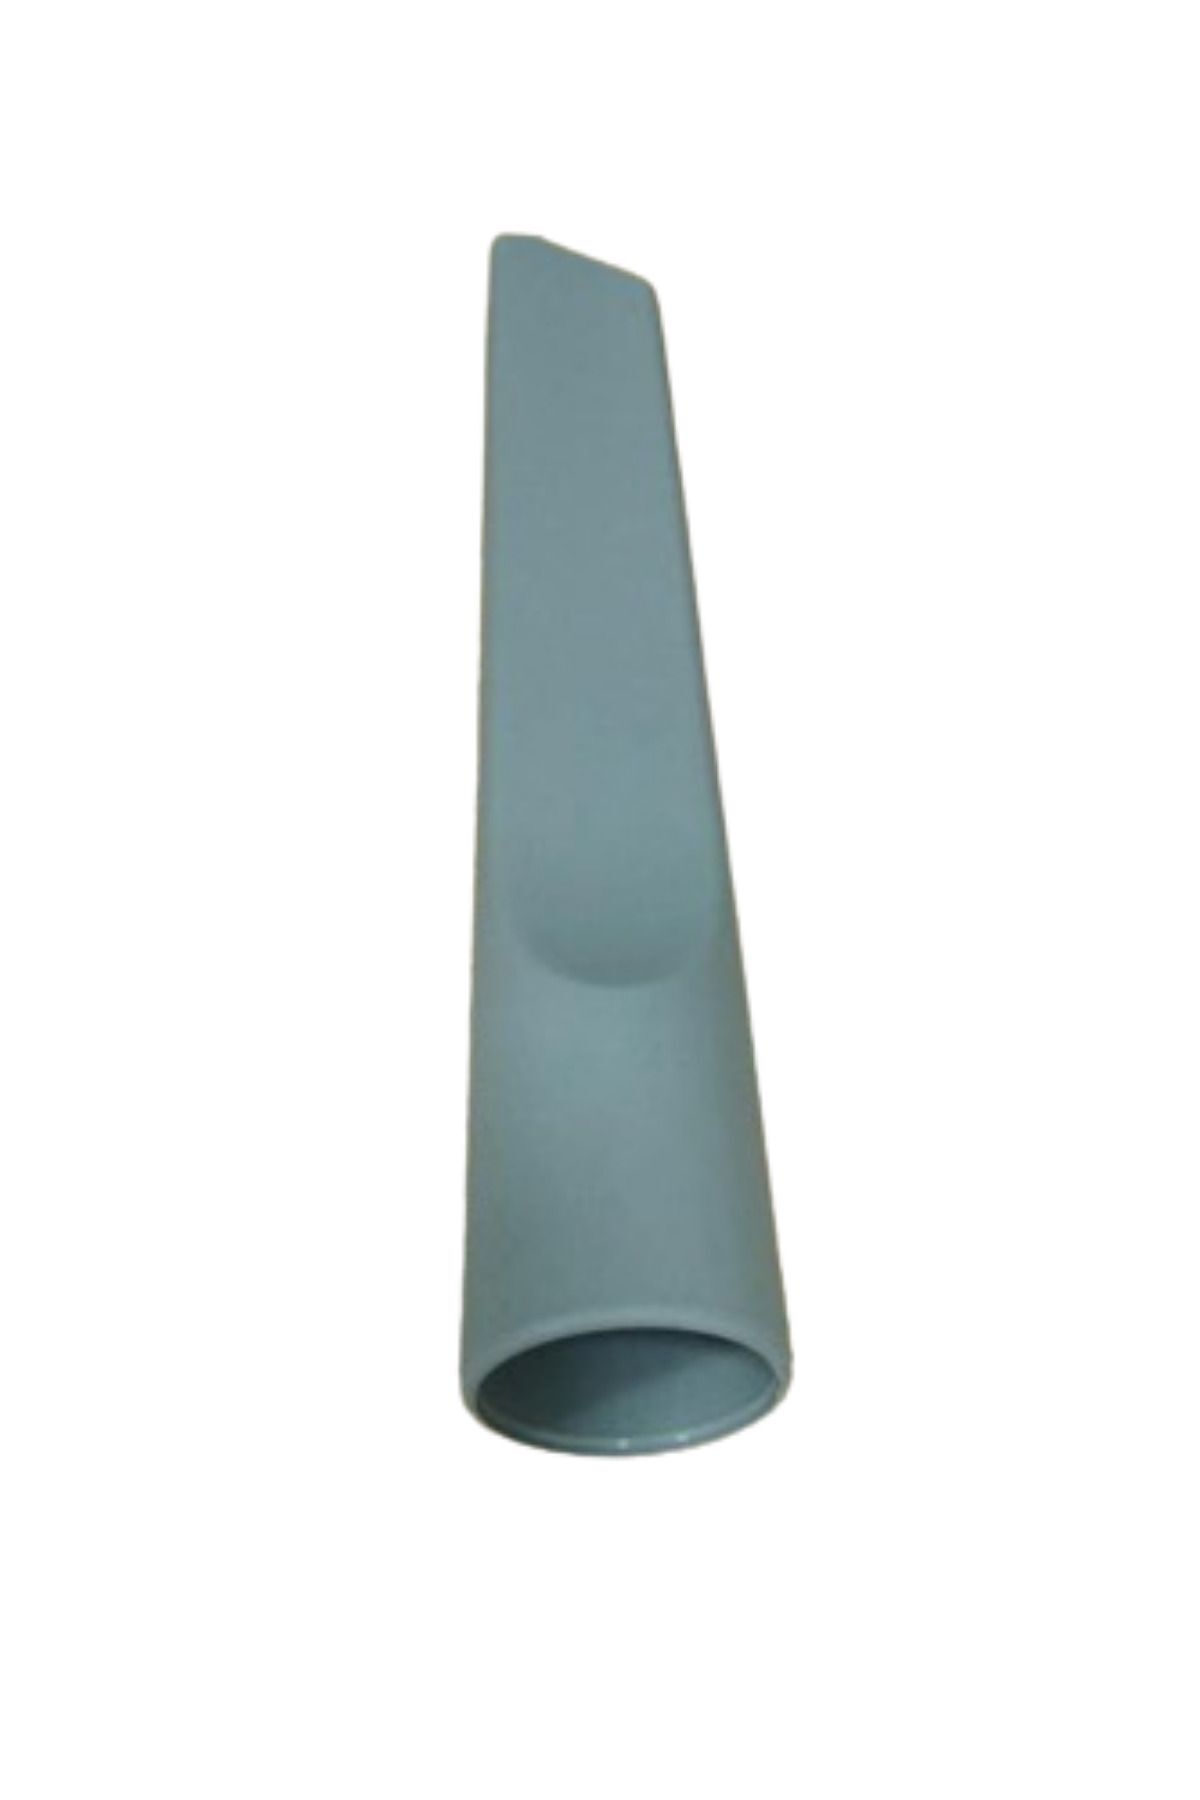 Hotpoint Sl B22 Aa0 Süpürge Koltuk Arası Düz Emici Başlık Gri Renk(22,5 cm)